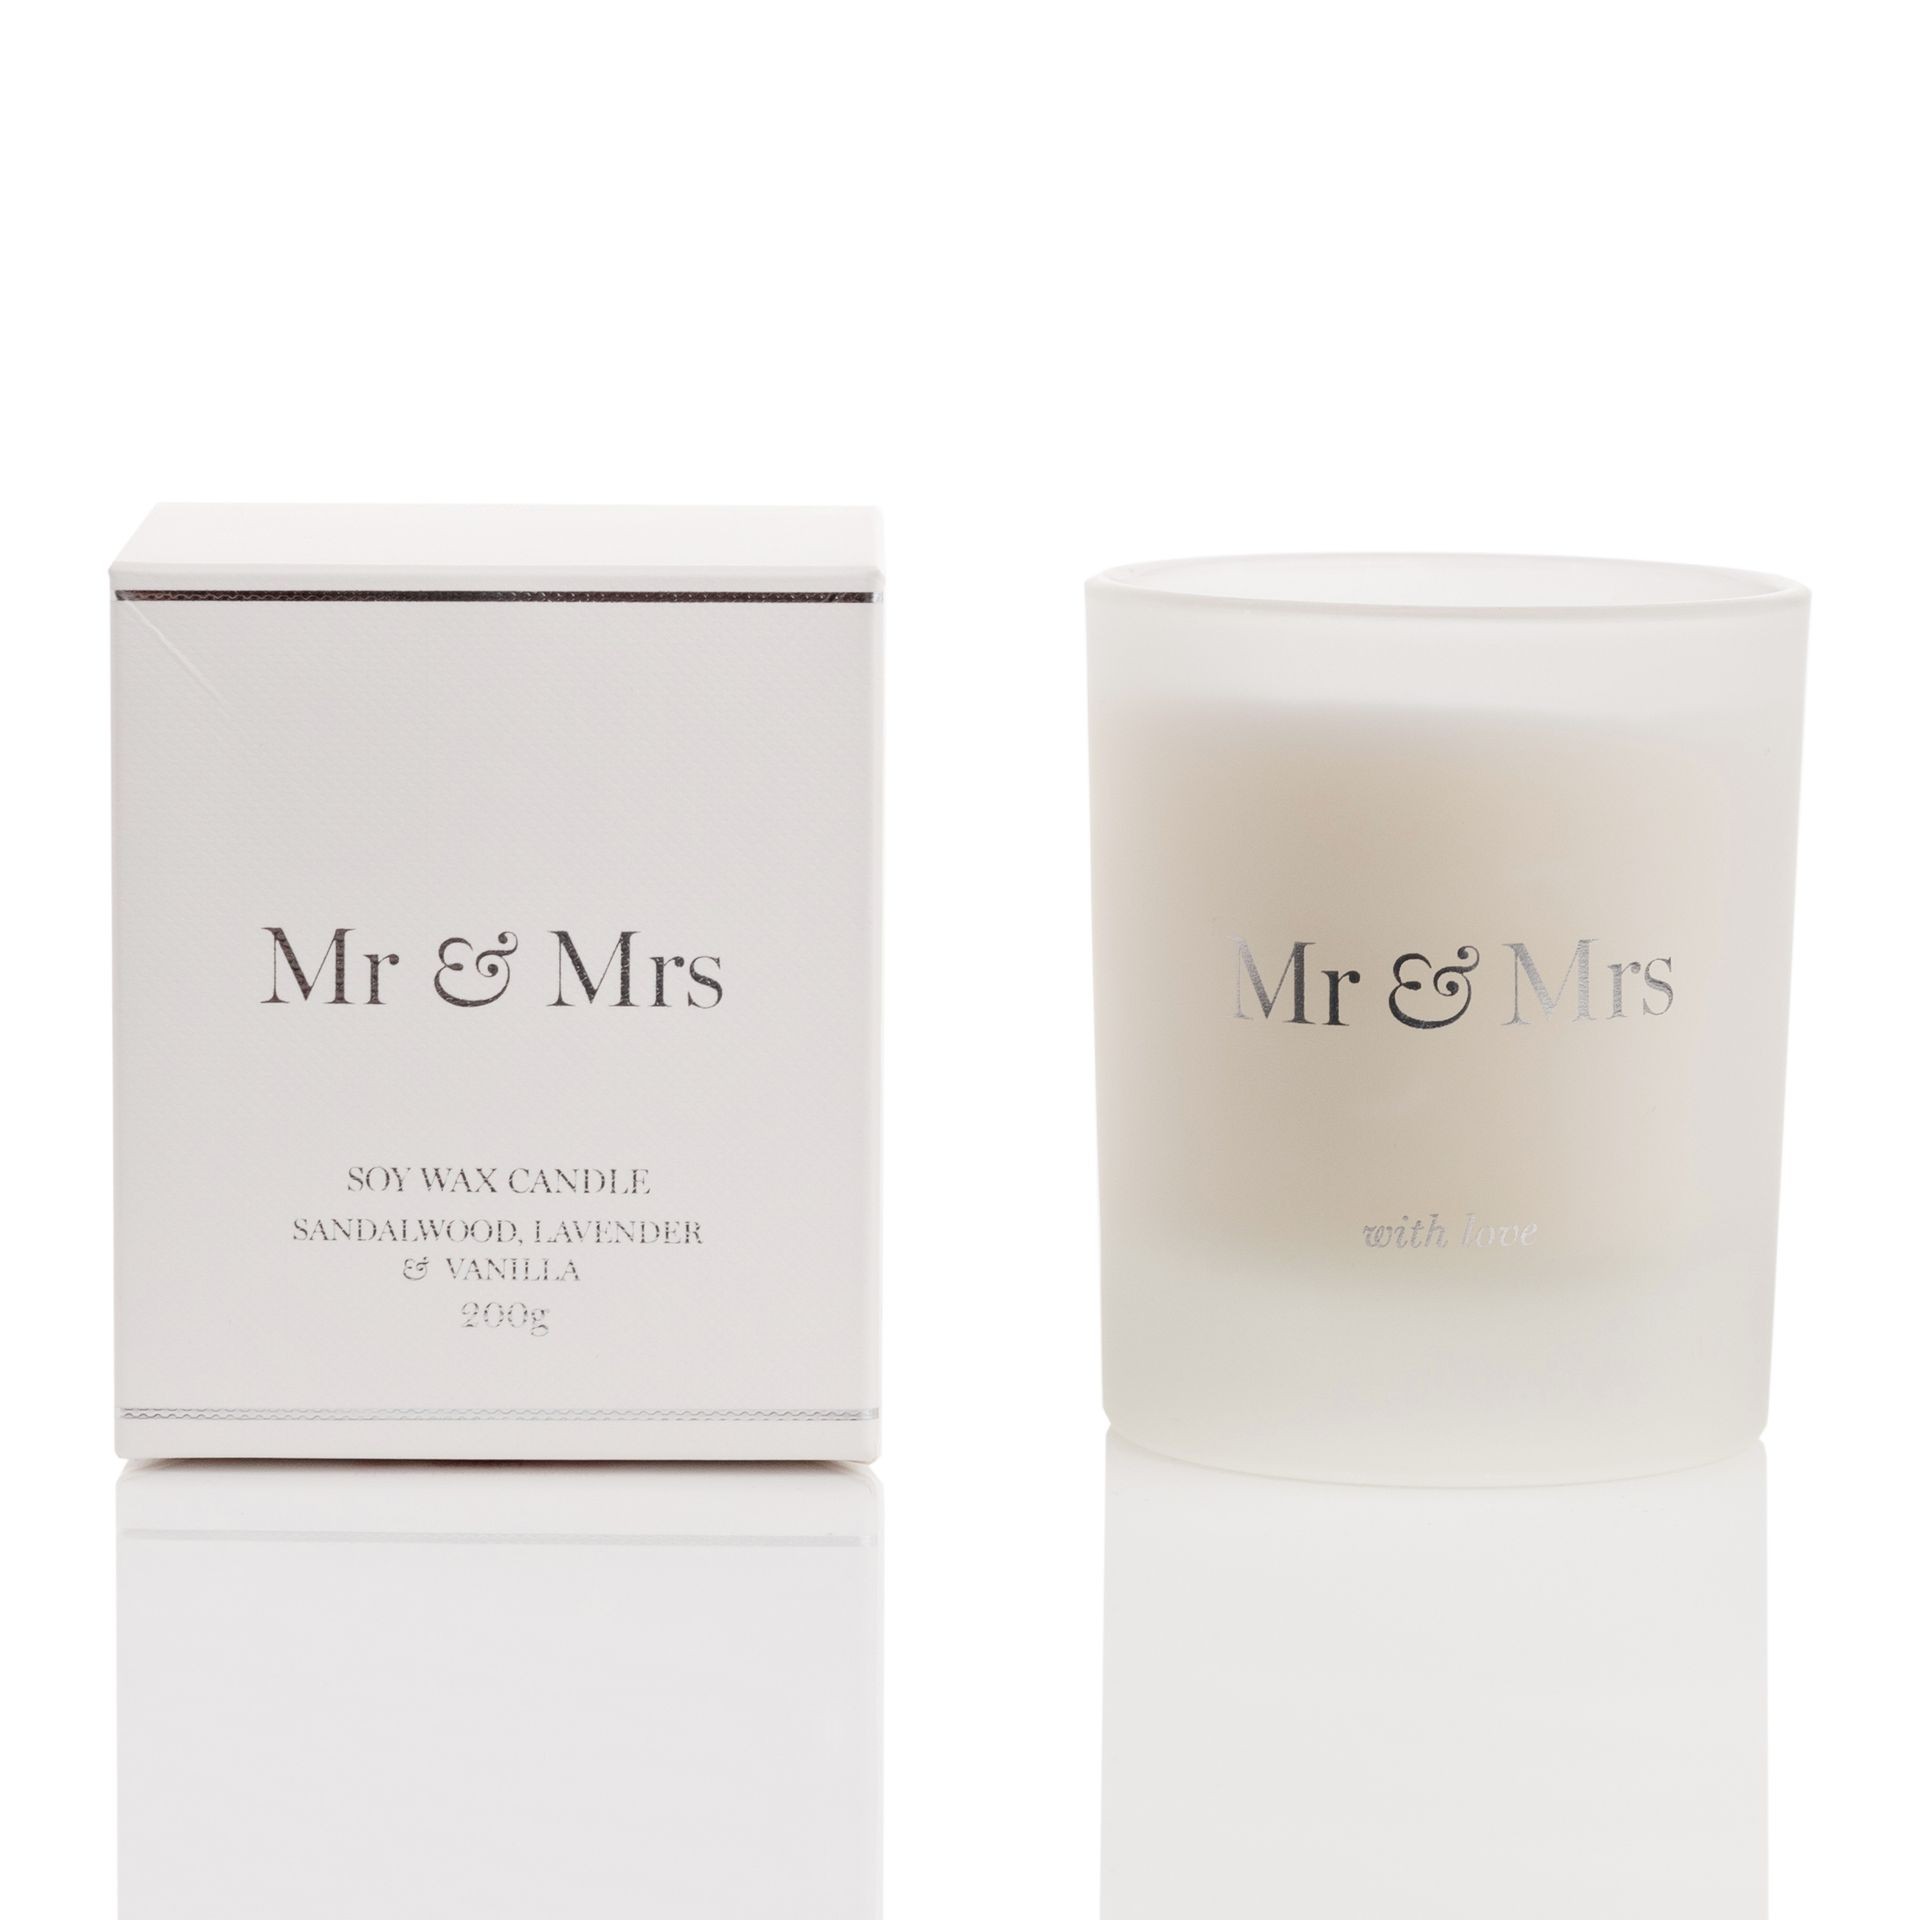 Lõhnaküünal Amore "Mr & Mrs" 200g AM201